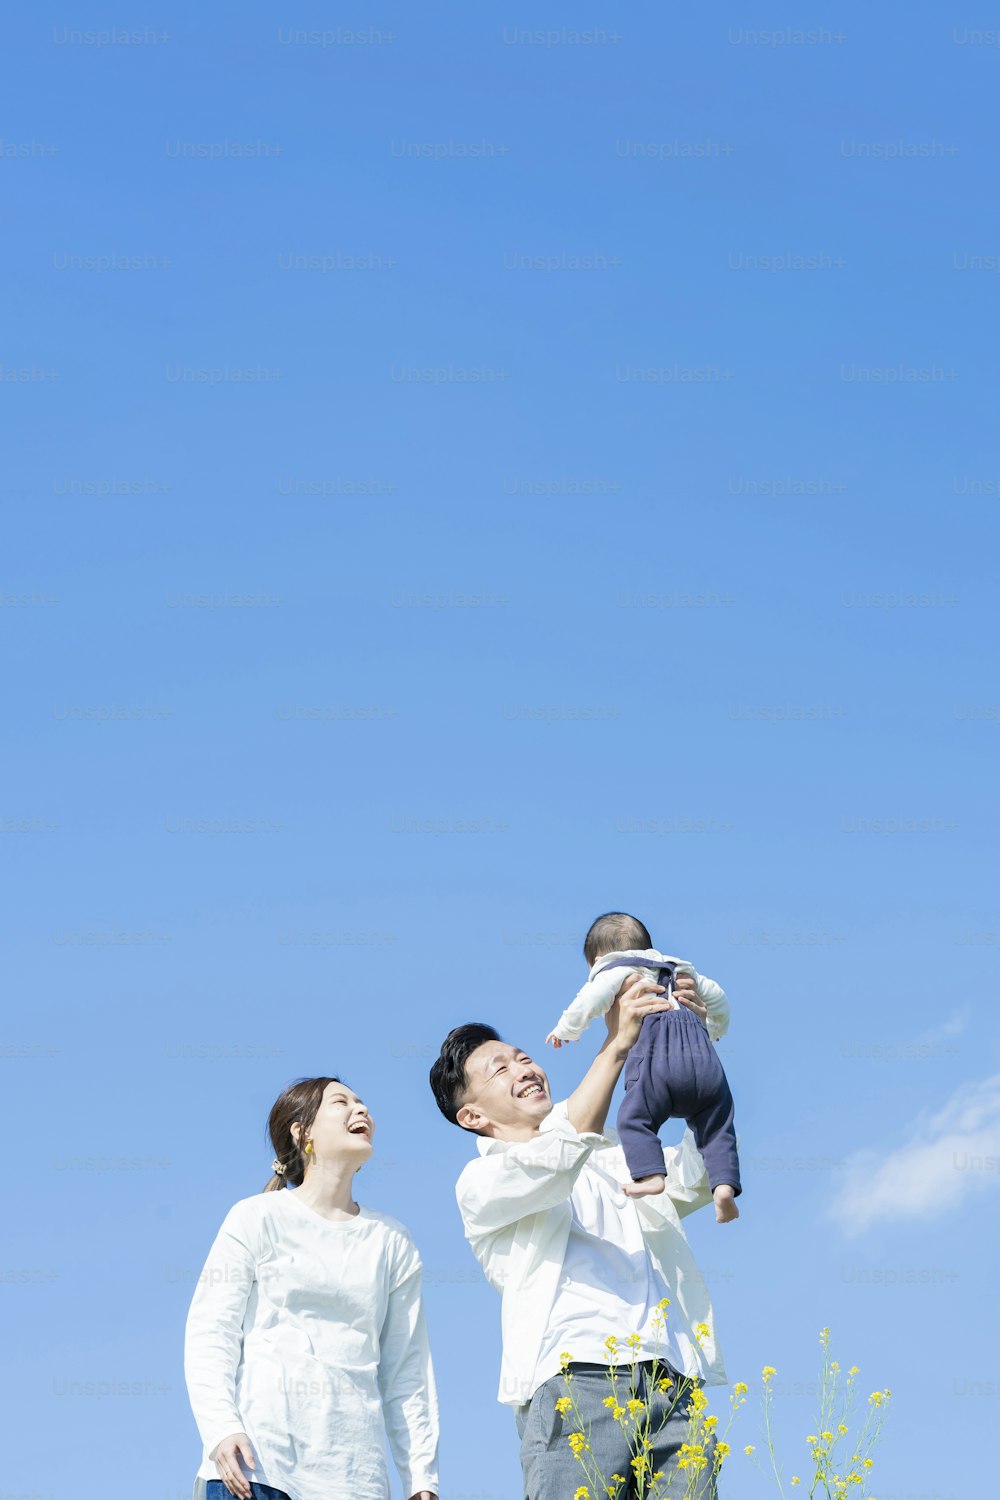 Eltern halten ihr Baby hoch unter dem blauen Himmel